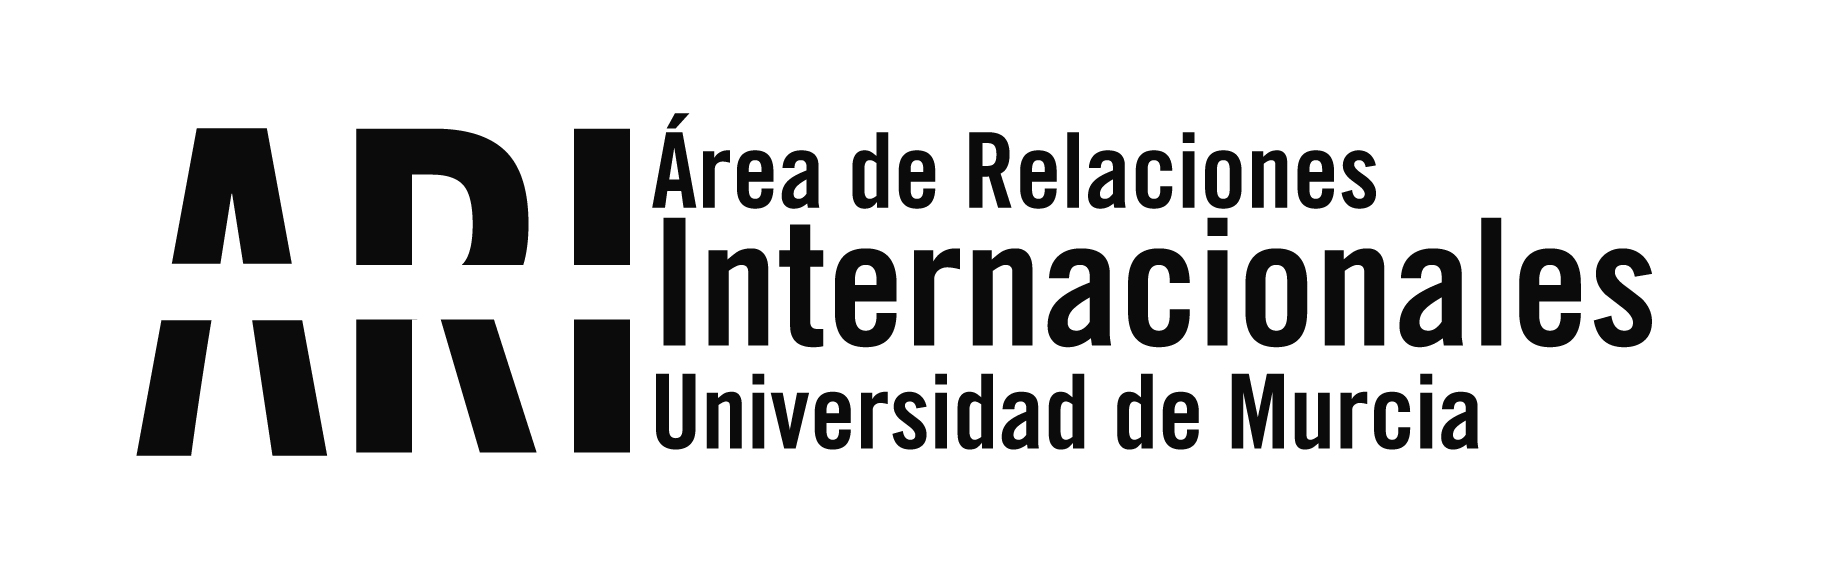 Profesores de la UM dan una conferencia en la ciudad argentina de Córdoba - Área de Relaciones Internacionales